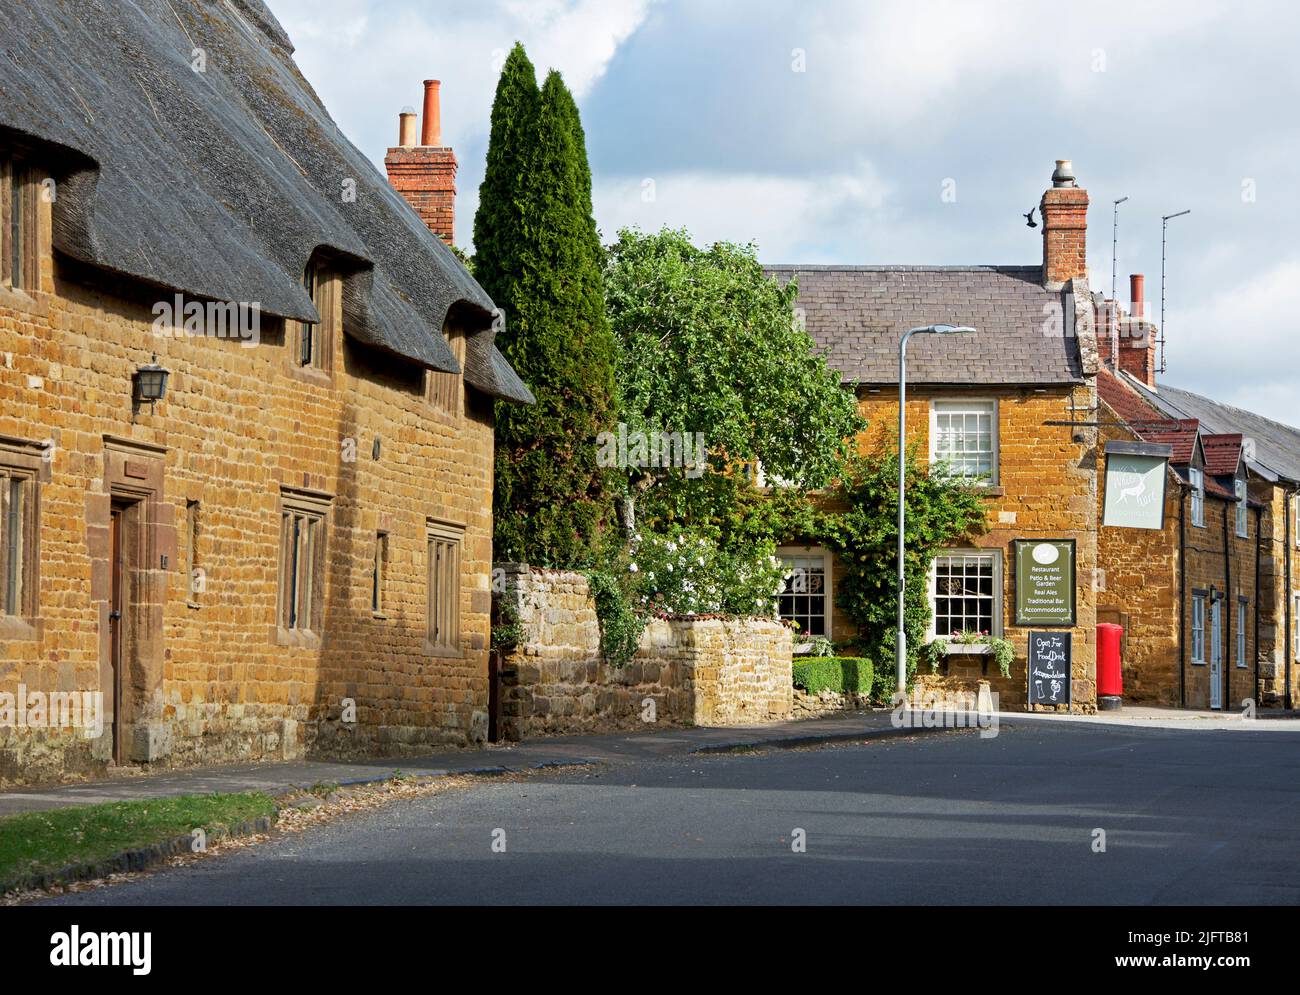 Le village de Lyddington, Rutland, Angleterre Royaume-Uni Banque D'Images